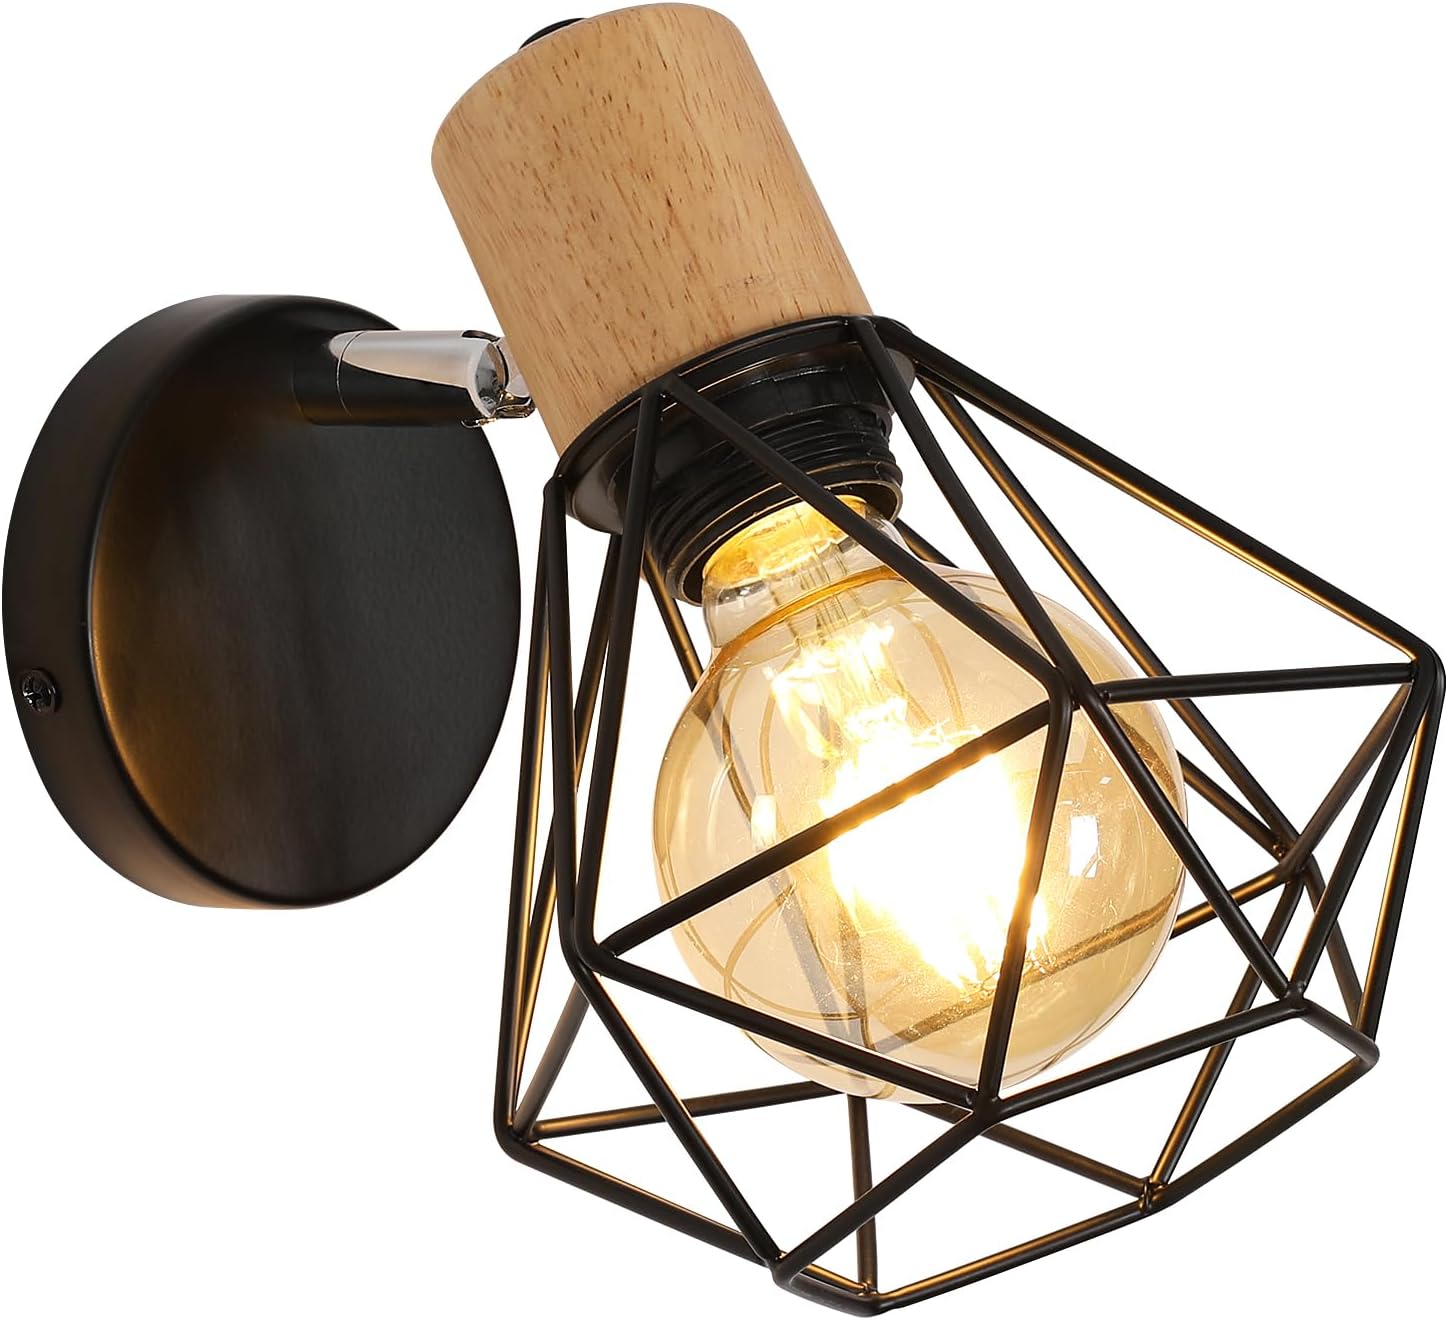 Lampe de chevet avec cage géométrique en métal Hoel